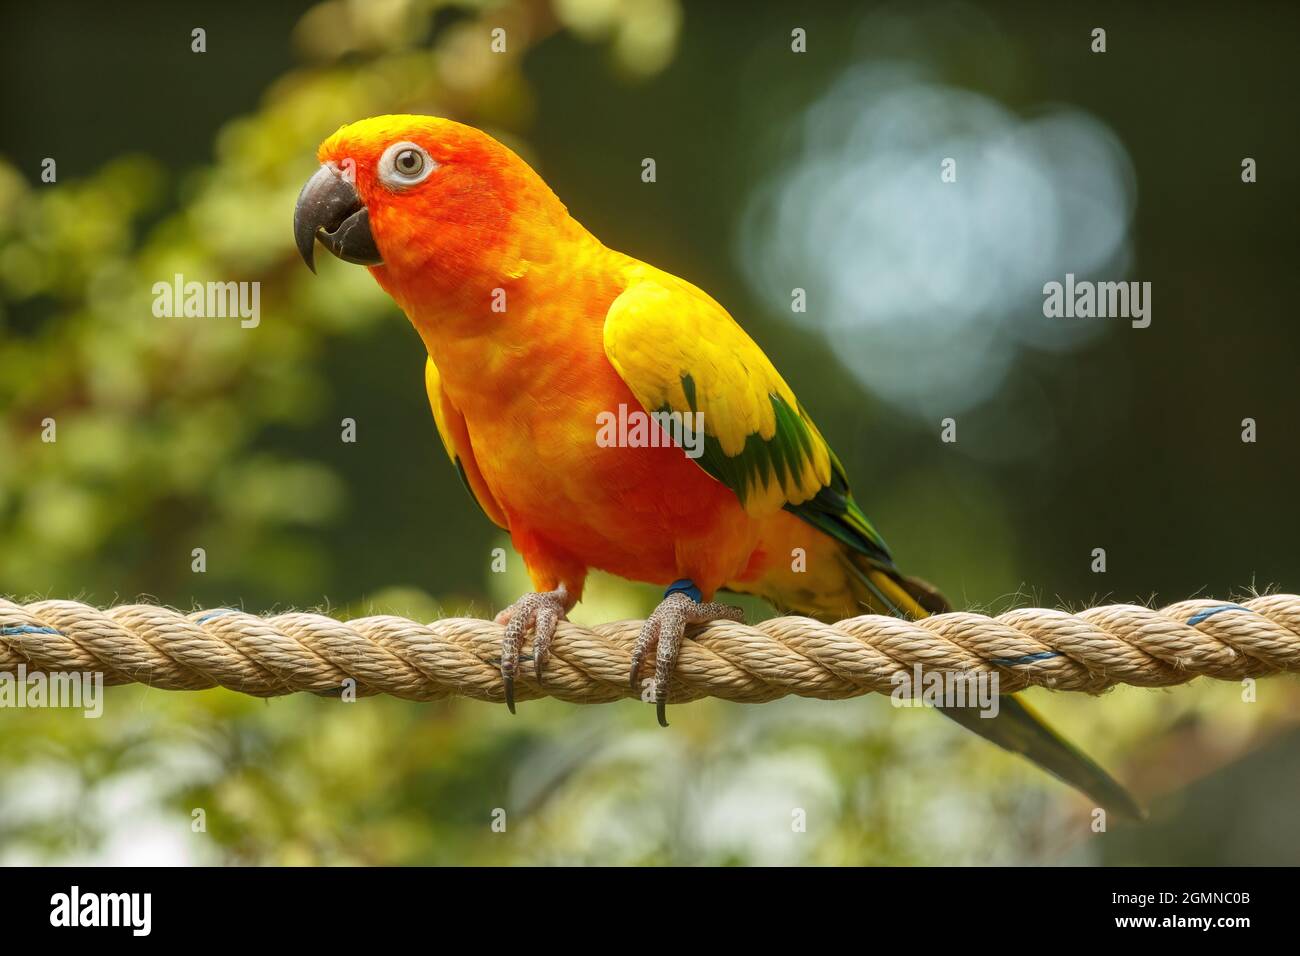 Un pappagallo solare, o conure sole, un uccello colorato sudamericano della famiglia dei pappagalli, che si posano su una corda Foto Stock